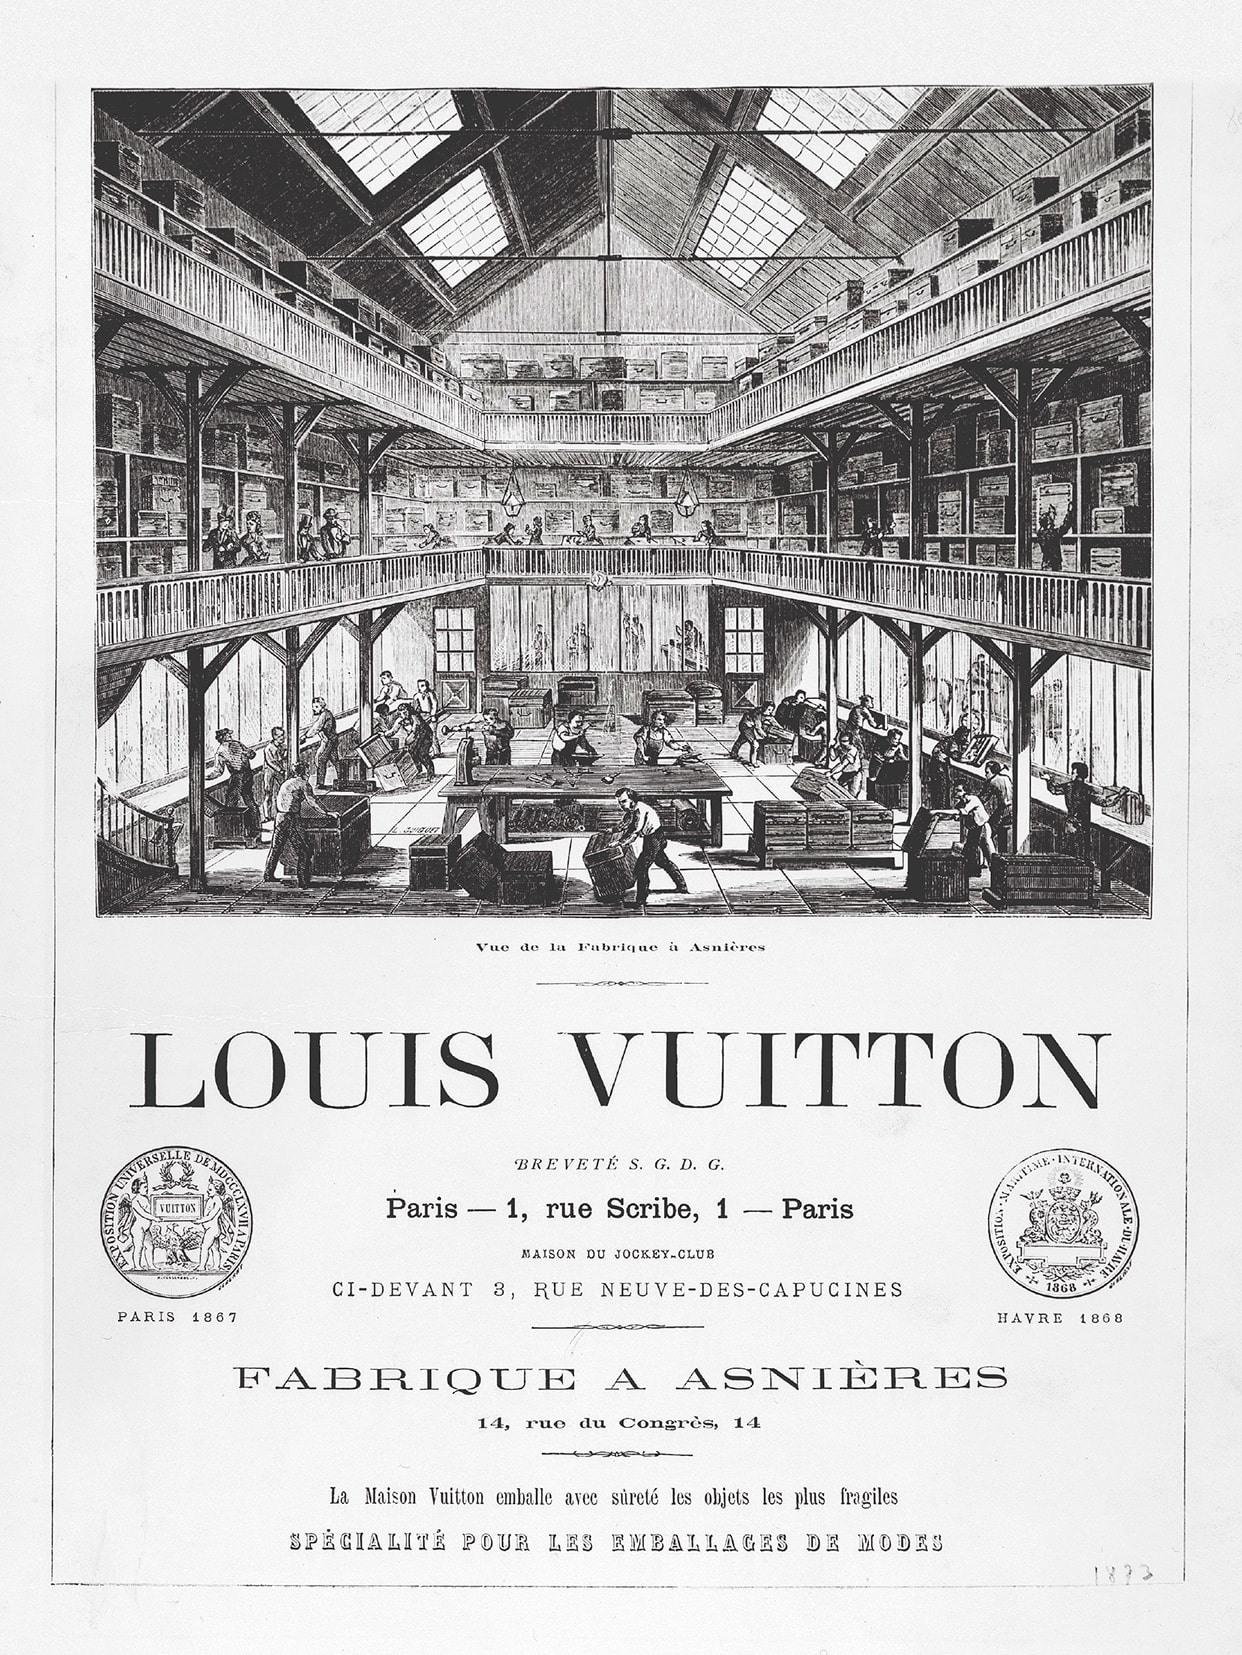 Louis Vuitton in Asnières